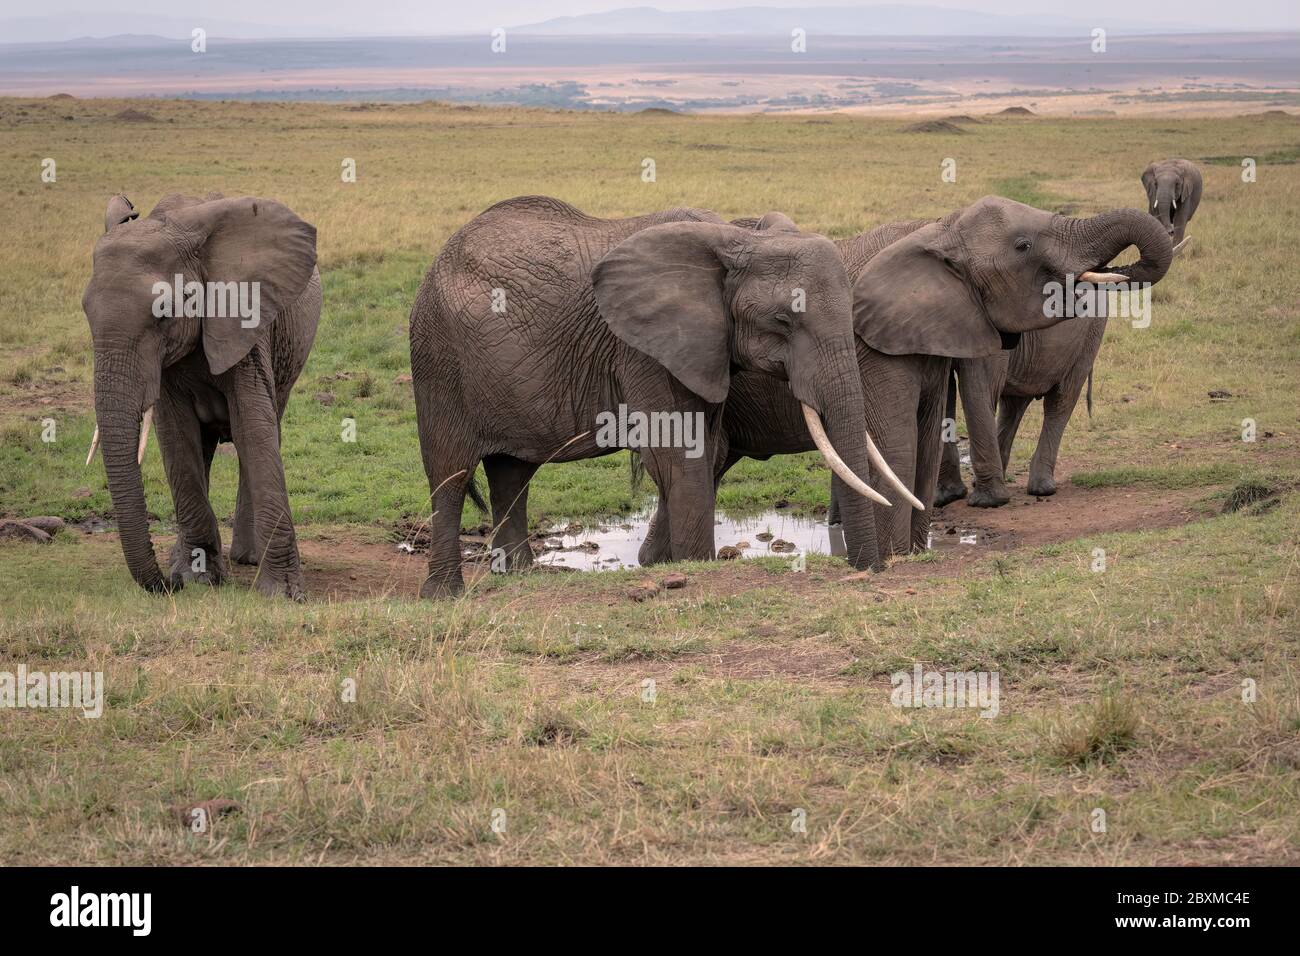 Pequeña manada de elefantes se reunieron alrededor de un pozo de agua potable. Imagen tomada en el Maasai Mara, Kenia. Foto de stock